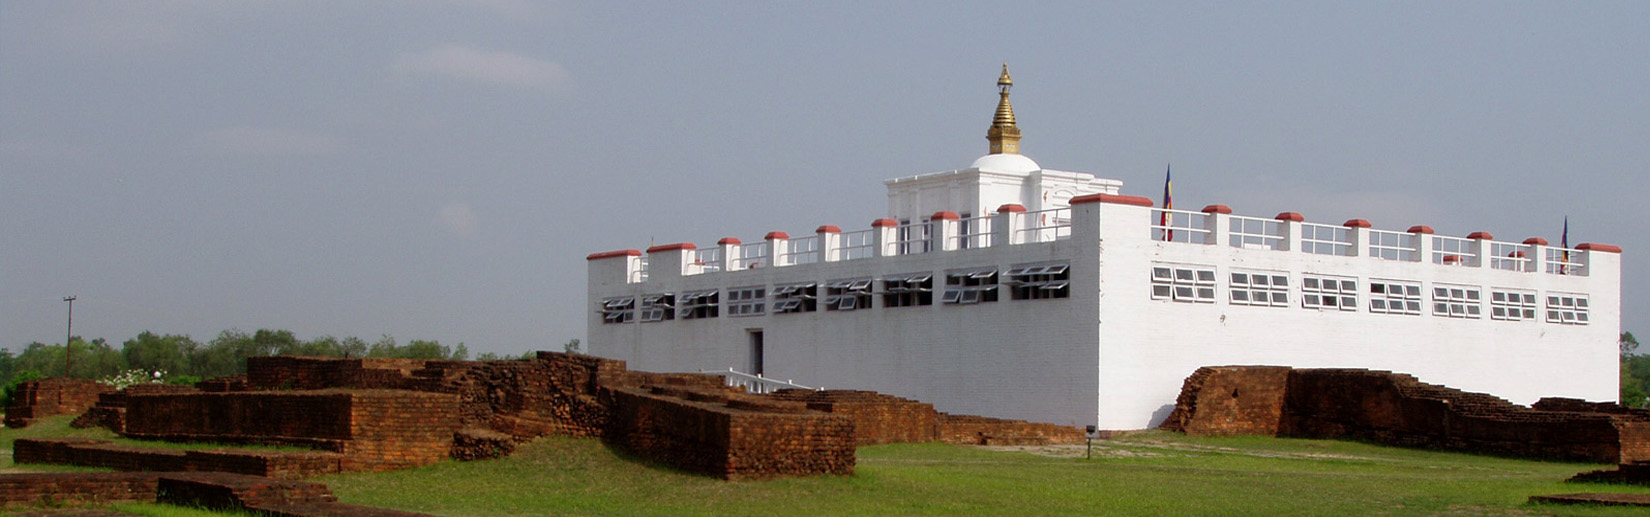 The Birthplace of the Lord Buddha, Lumbini